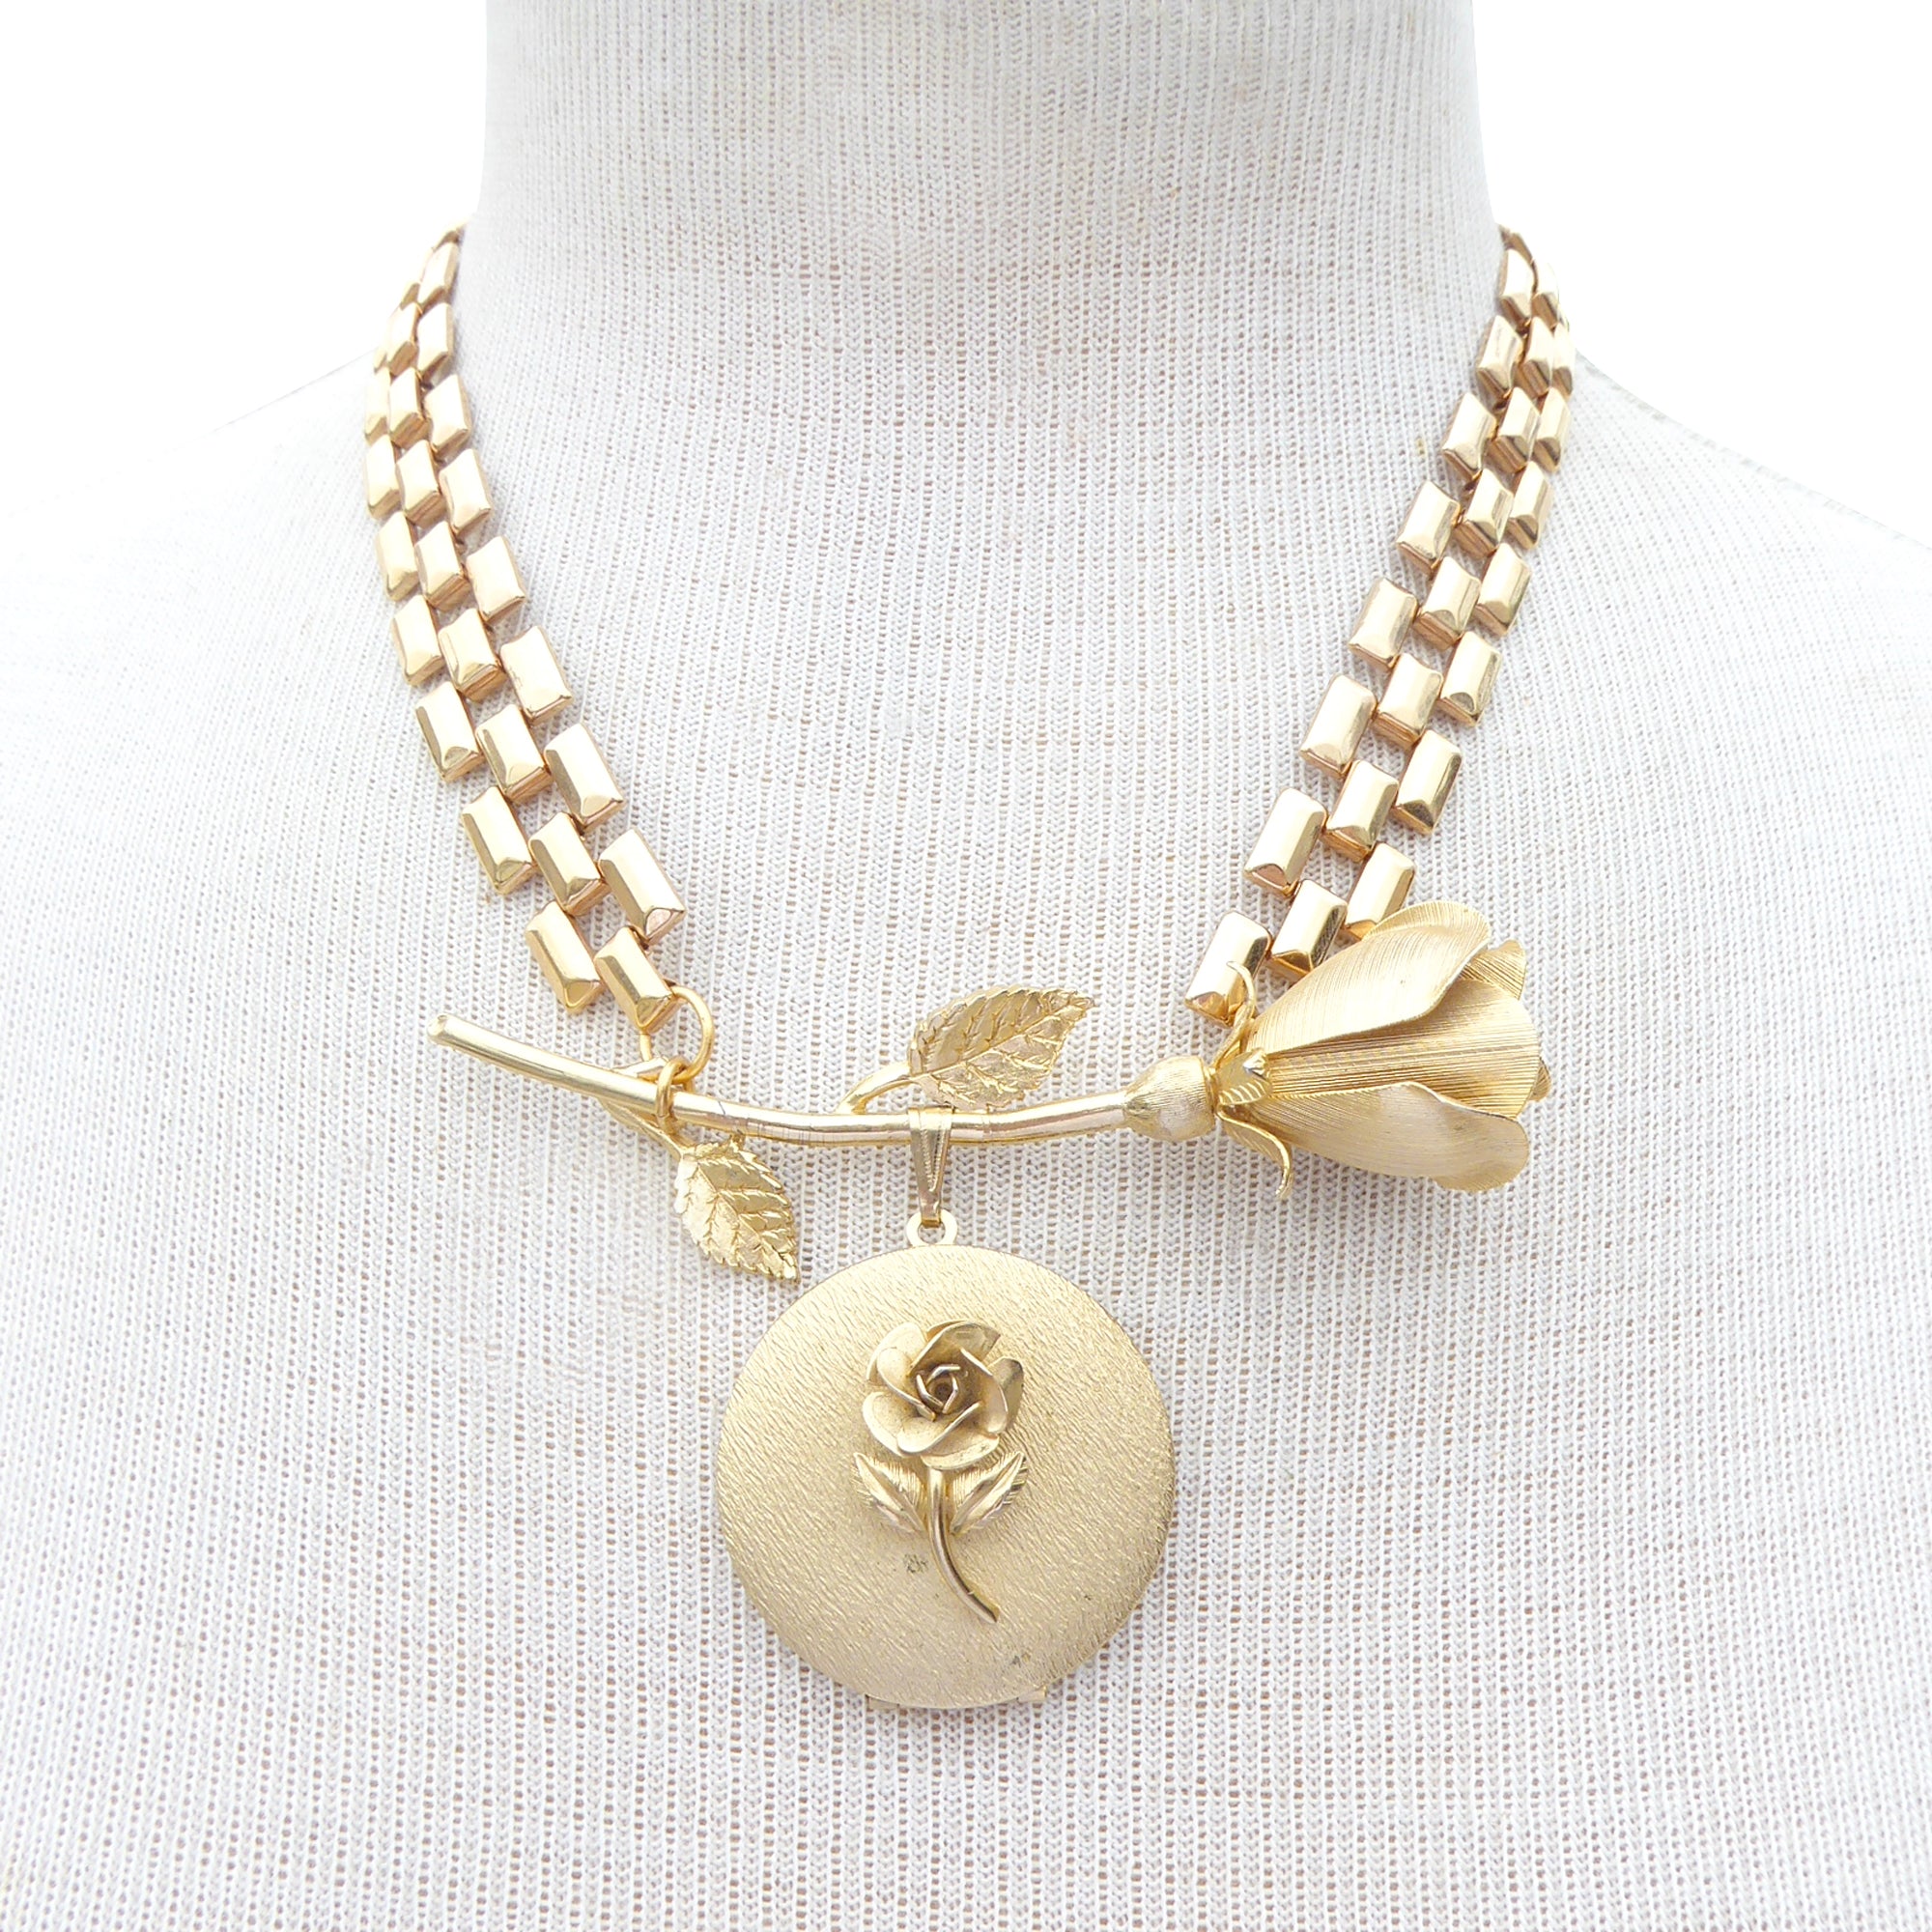 Vintage gold rose locket necklace by Jenny Dayco 7